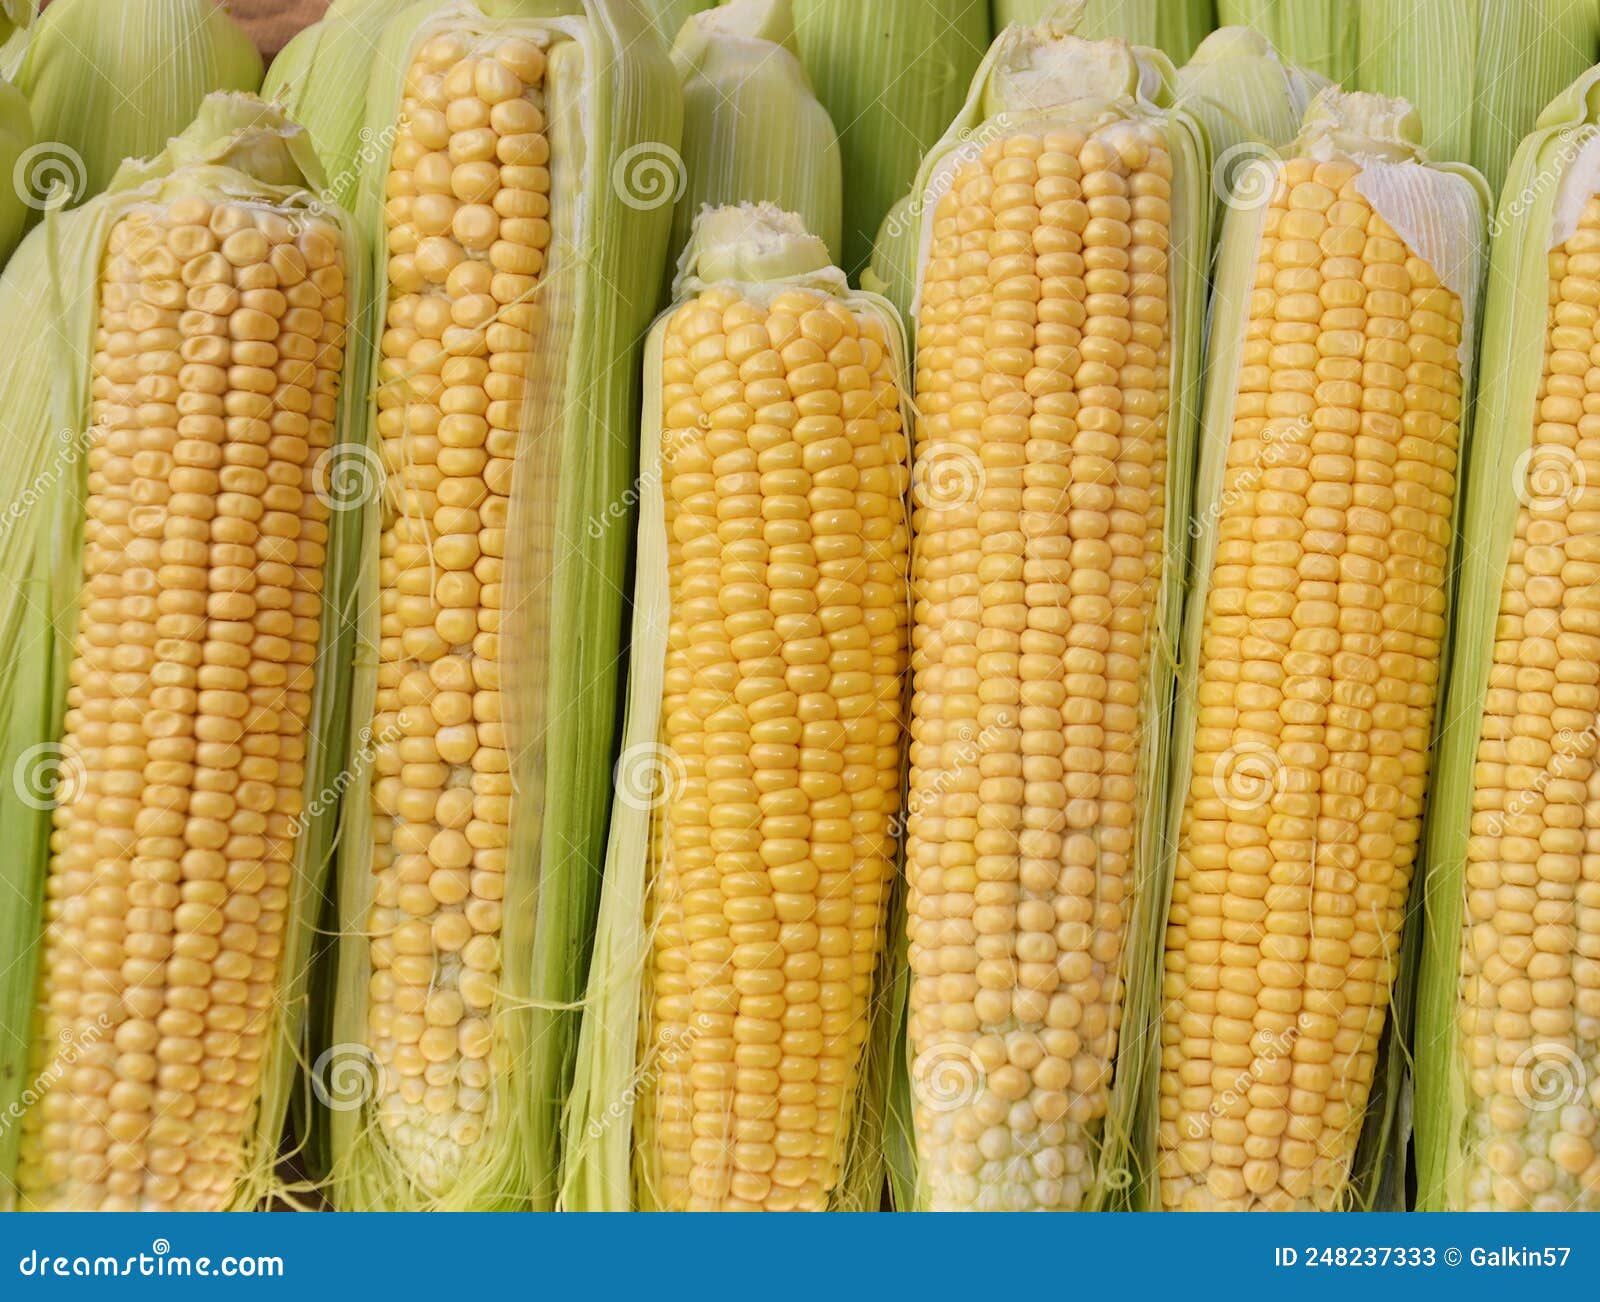 corn or maize lat. zea mays